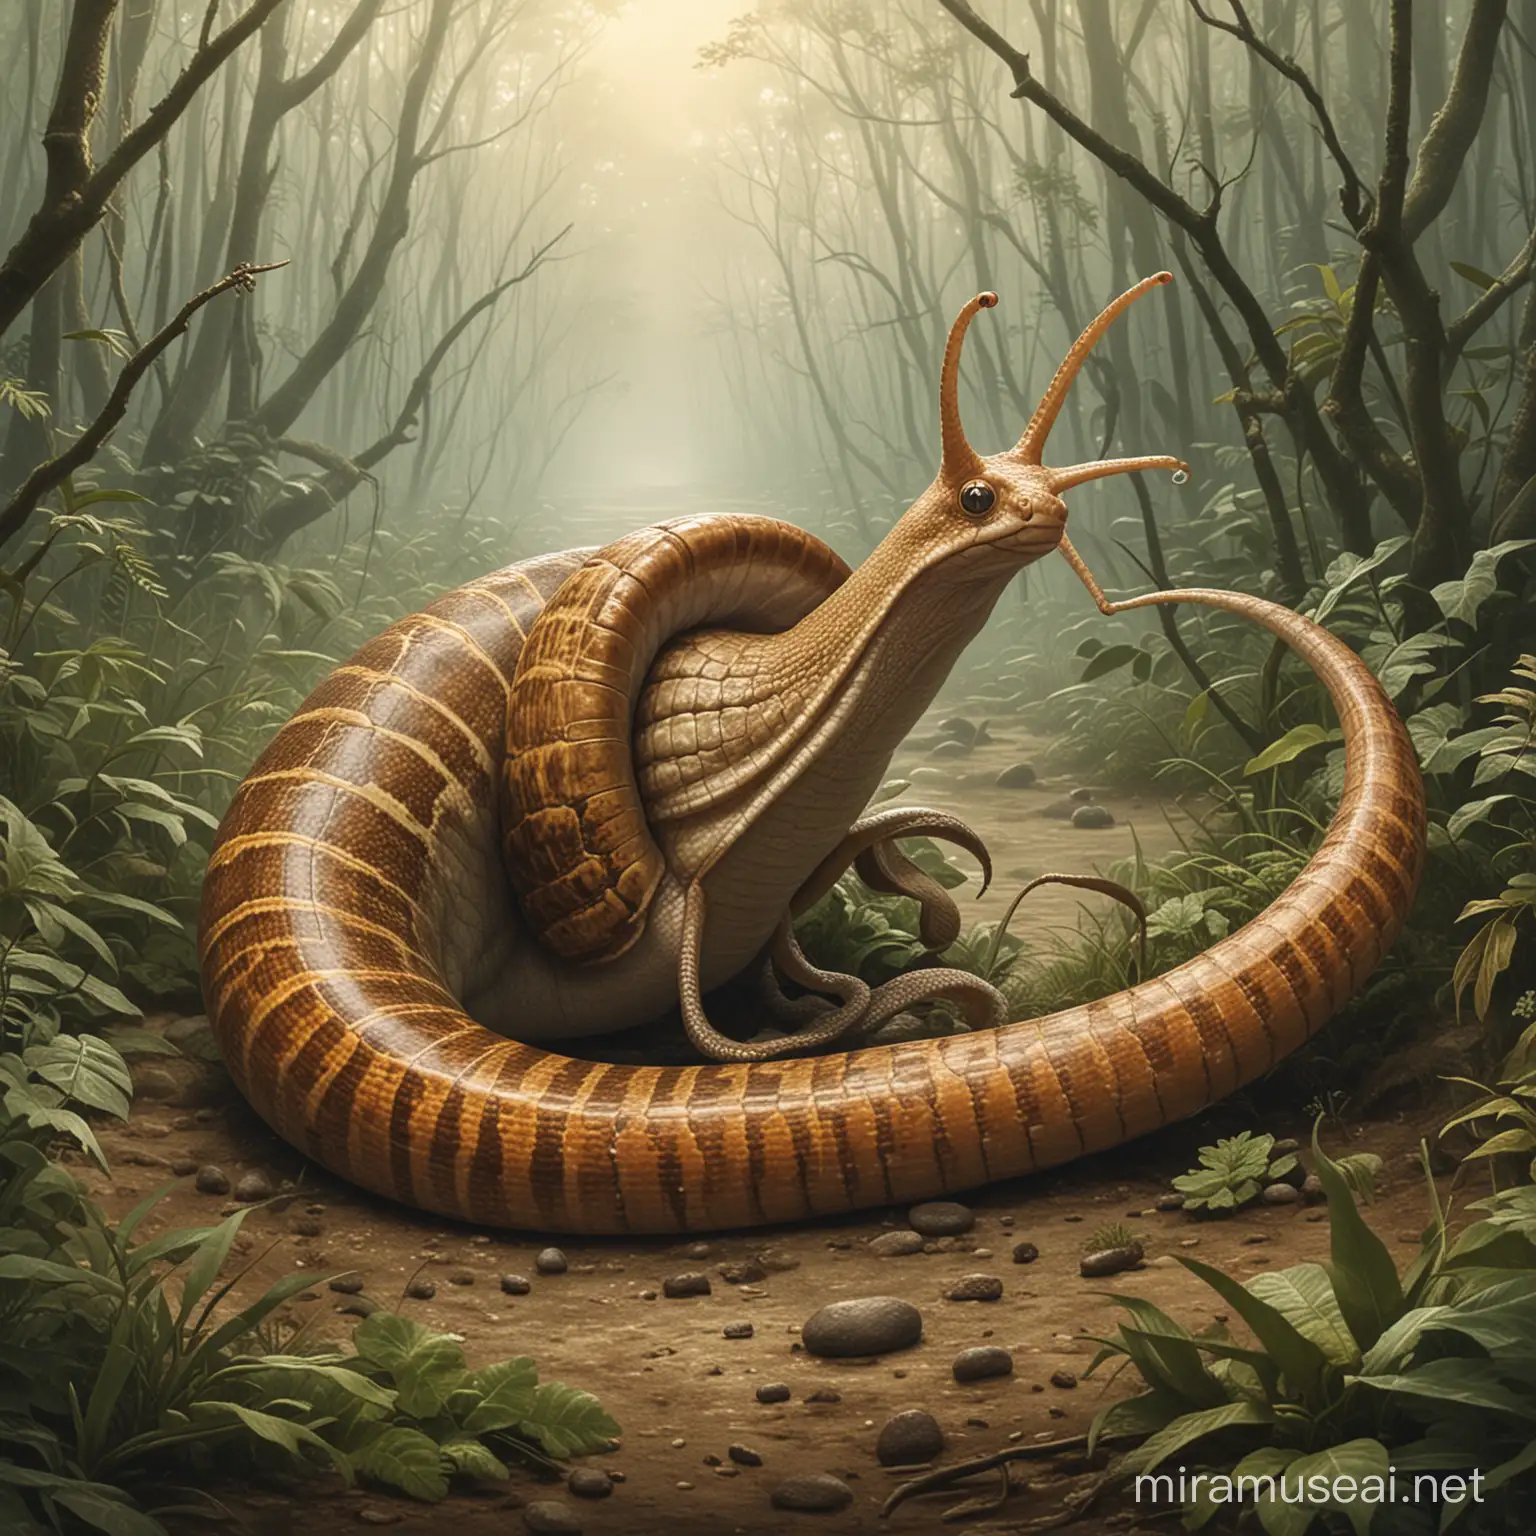 Hinh minh họa của một sinh vật trong truyện tên là  "Ốc đuôi rắn"
